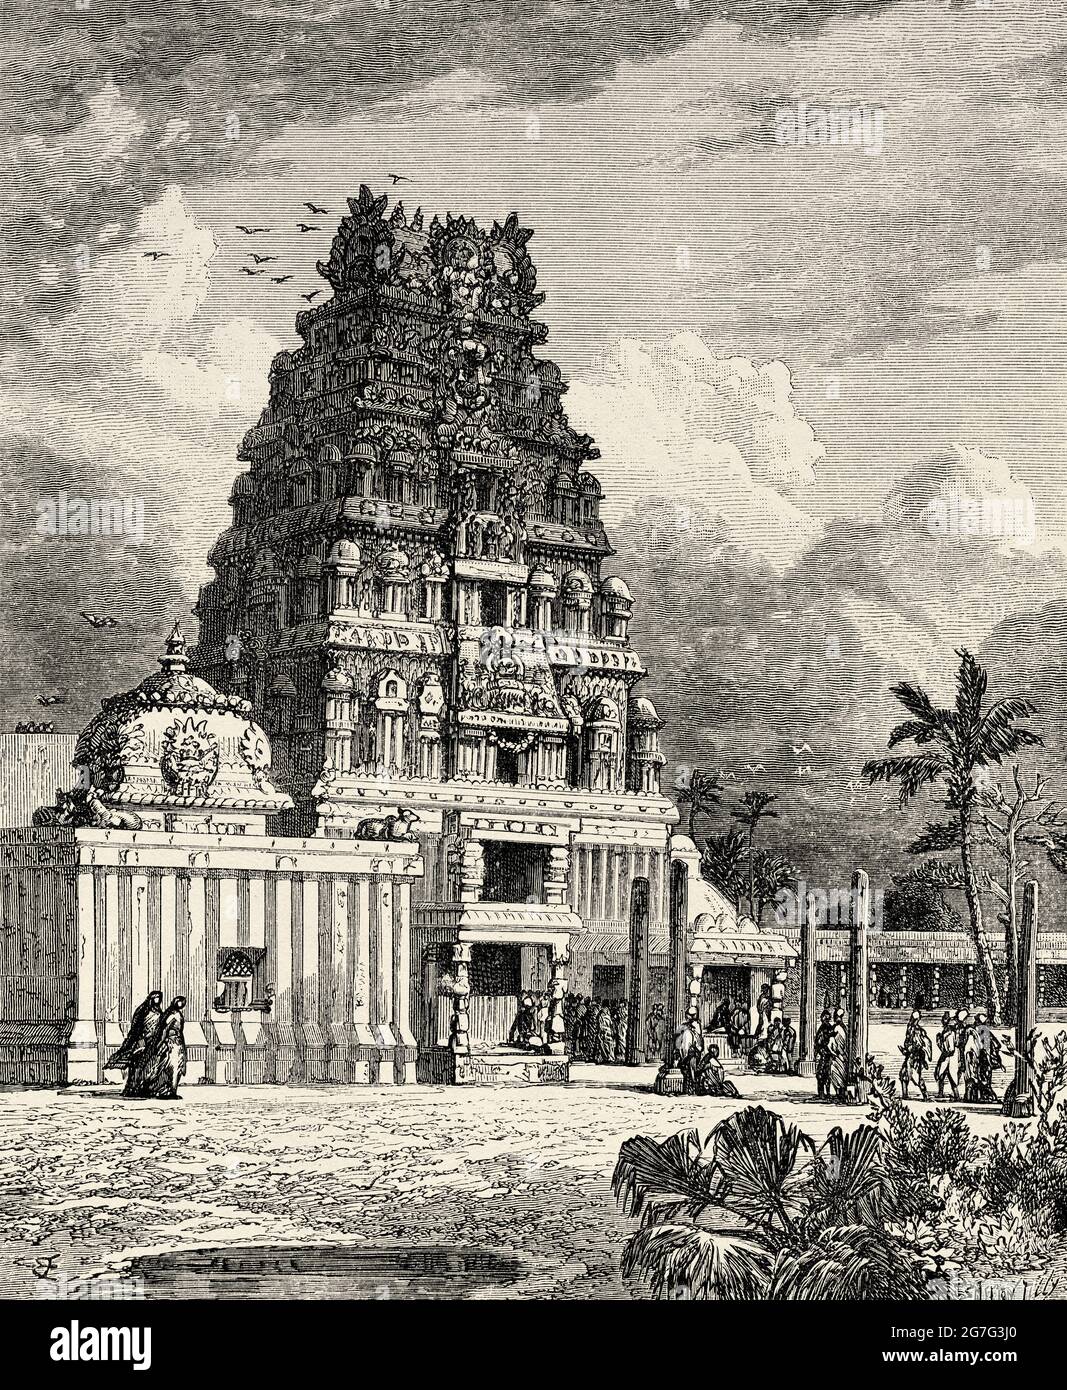 Villenour-Pagode. Hindu-Tempel, Villianur, Pondicherry, Indien. Alte Illustration aus dem 19. Jahrhundert von El Mundo Ilustrado 1880 Stockfoto